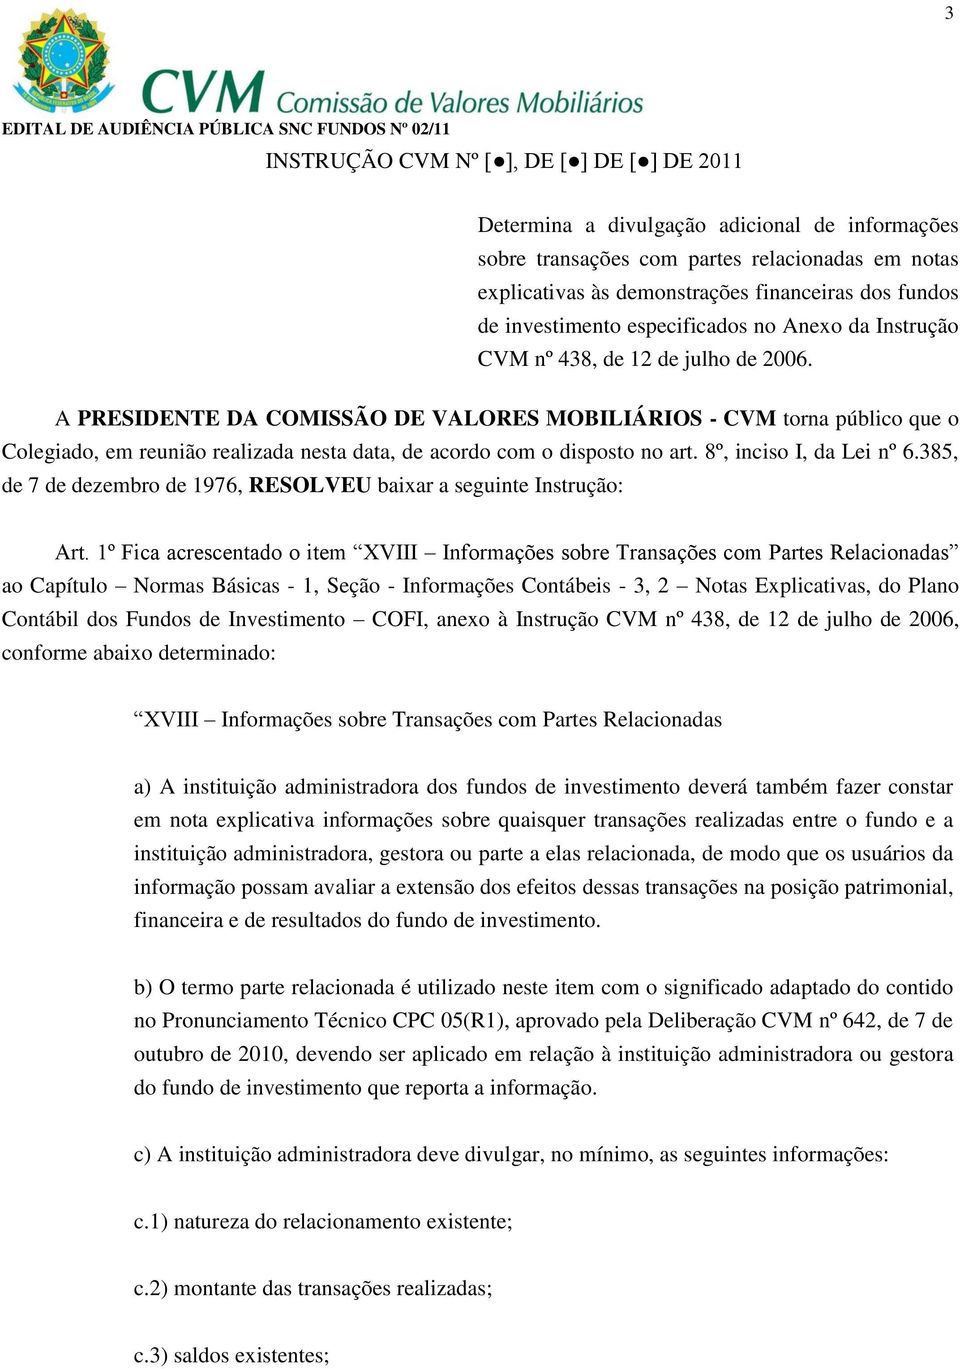 A PRESIDENTE DA COMISSÃO DE VALORES MOBILIÁRIOS - CVM torna público que o Colegiado, em reunião realizada nesta data, de acordo com o disposto no art. 8º, inciso I, da Lei nº 6.